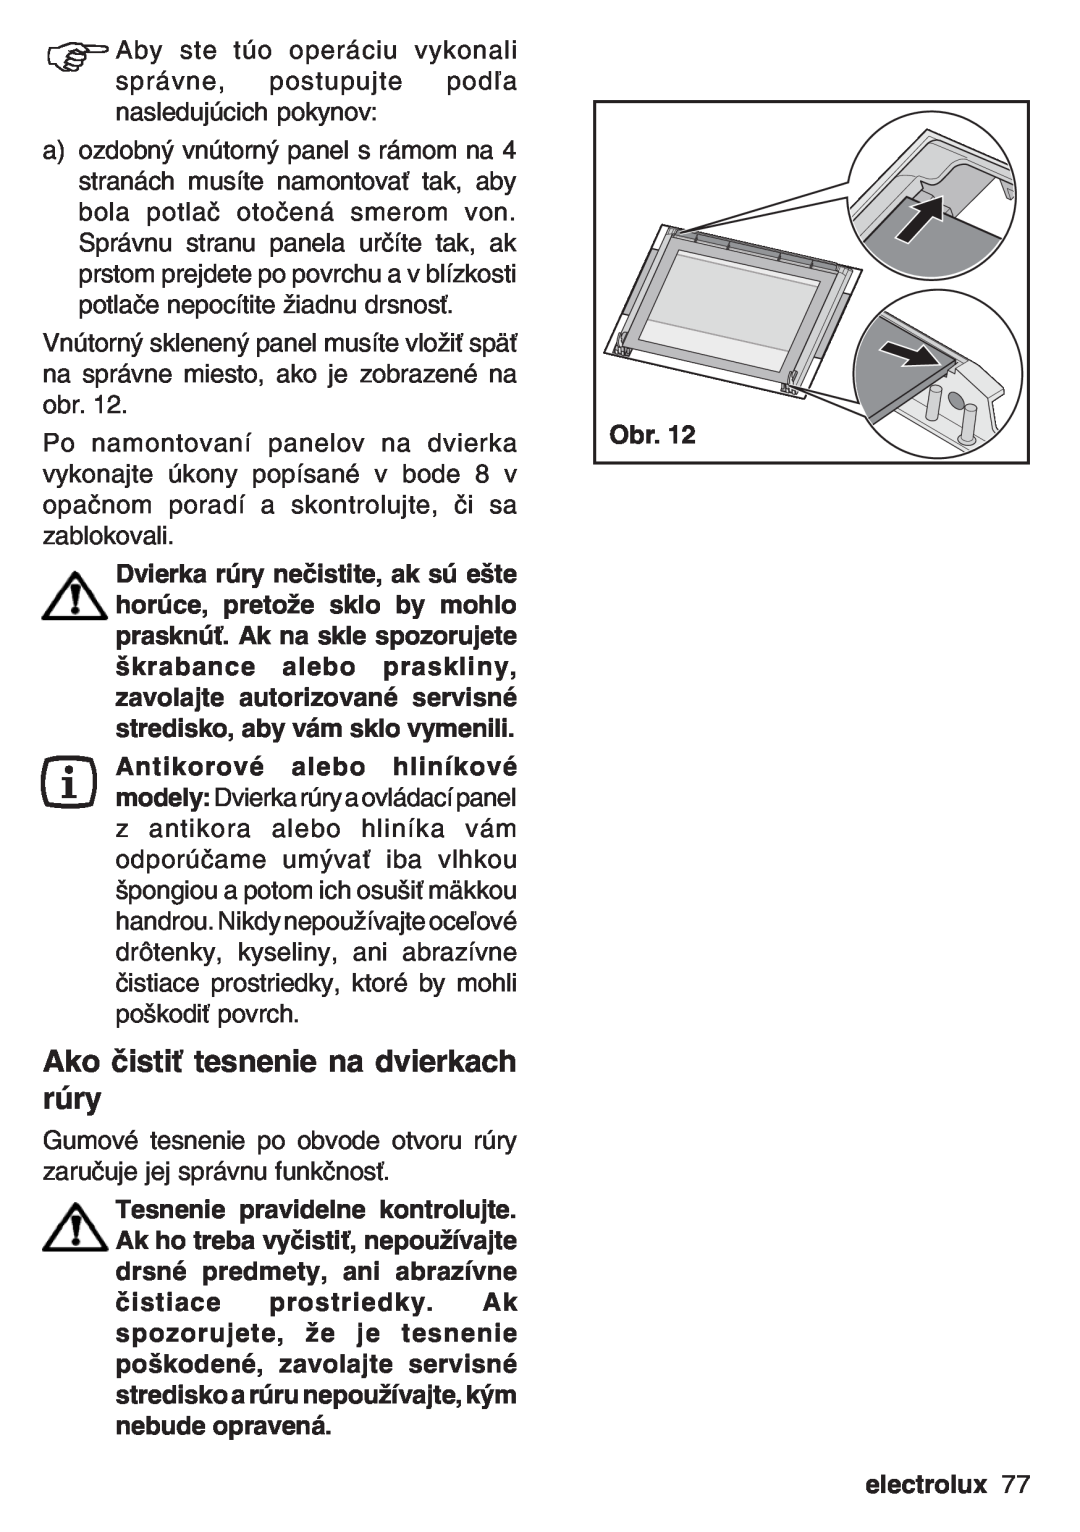 Electrolux EOB 53003 user manual Ako čistiť tesnenie na dvierkach rúry, electrolux 